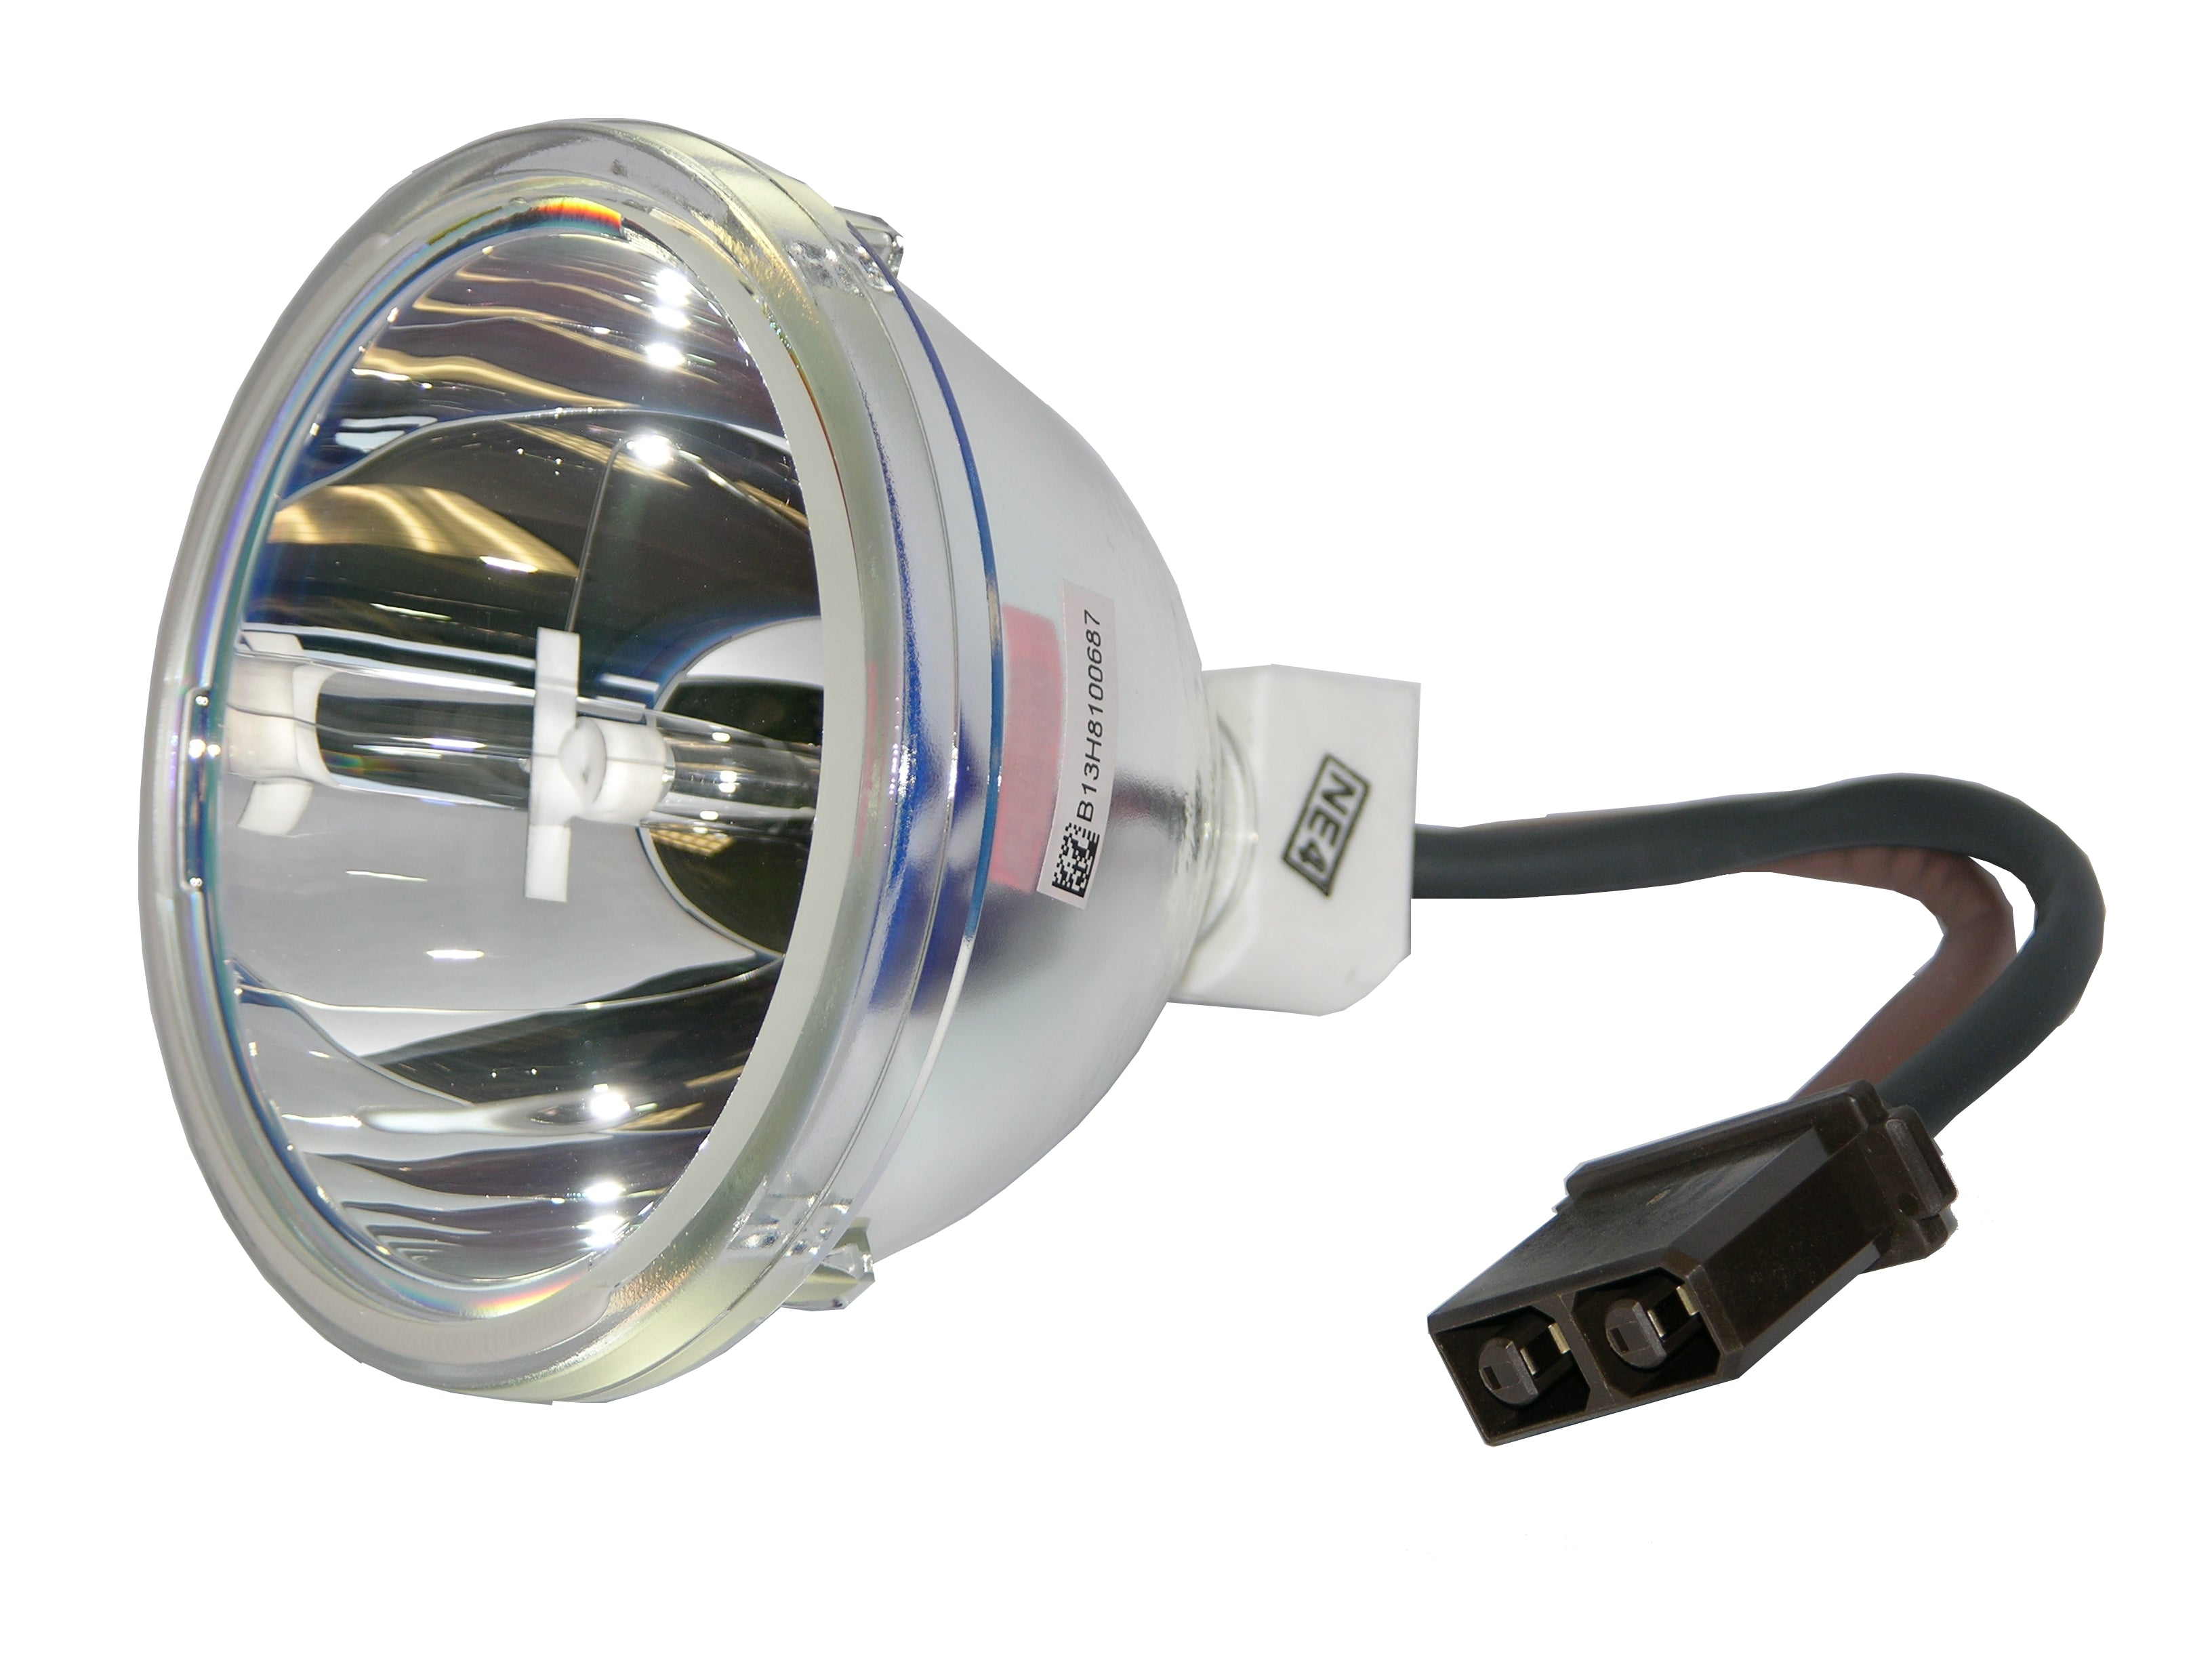 DLP TV Lamp, DLP TV Lamp RP-TOS SHP66 Toshiba/Phoenix Lamp/Bulb for D42-LMP, D95-LMP, TB25-LMP, Y66/67, Y196-LMP